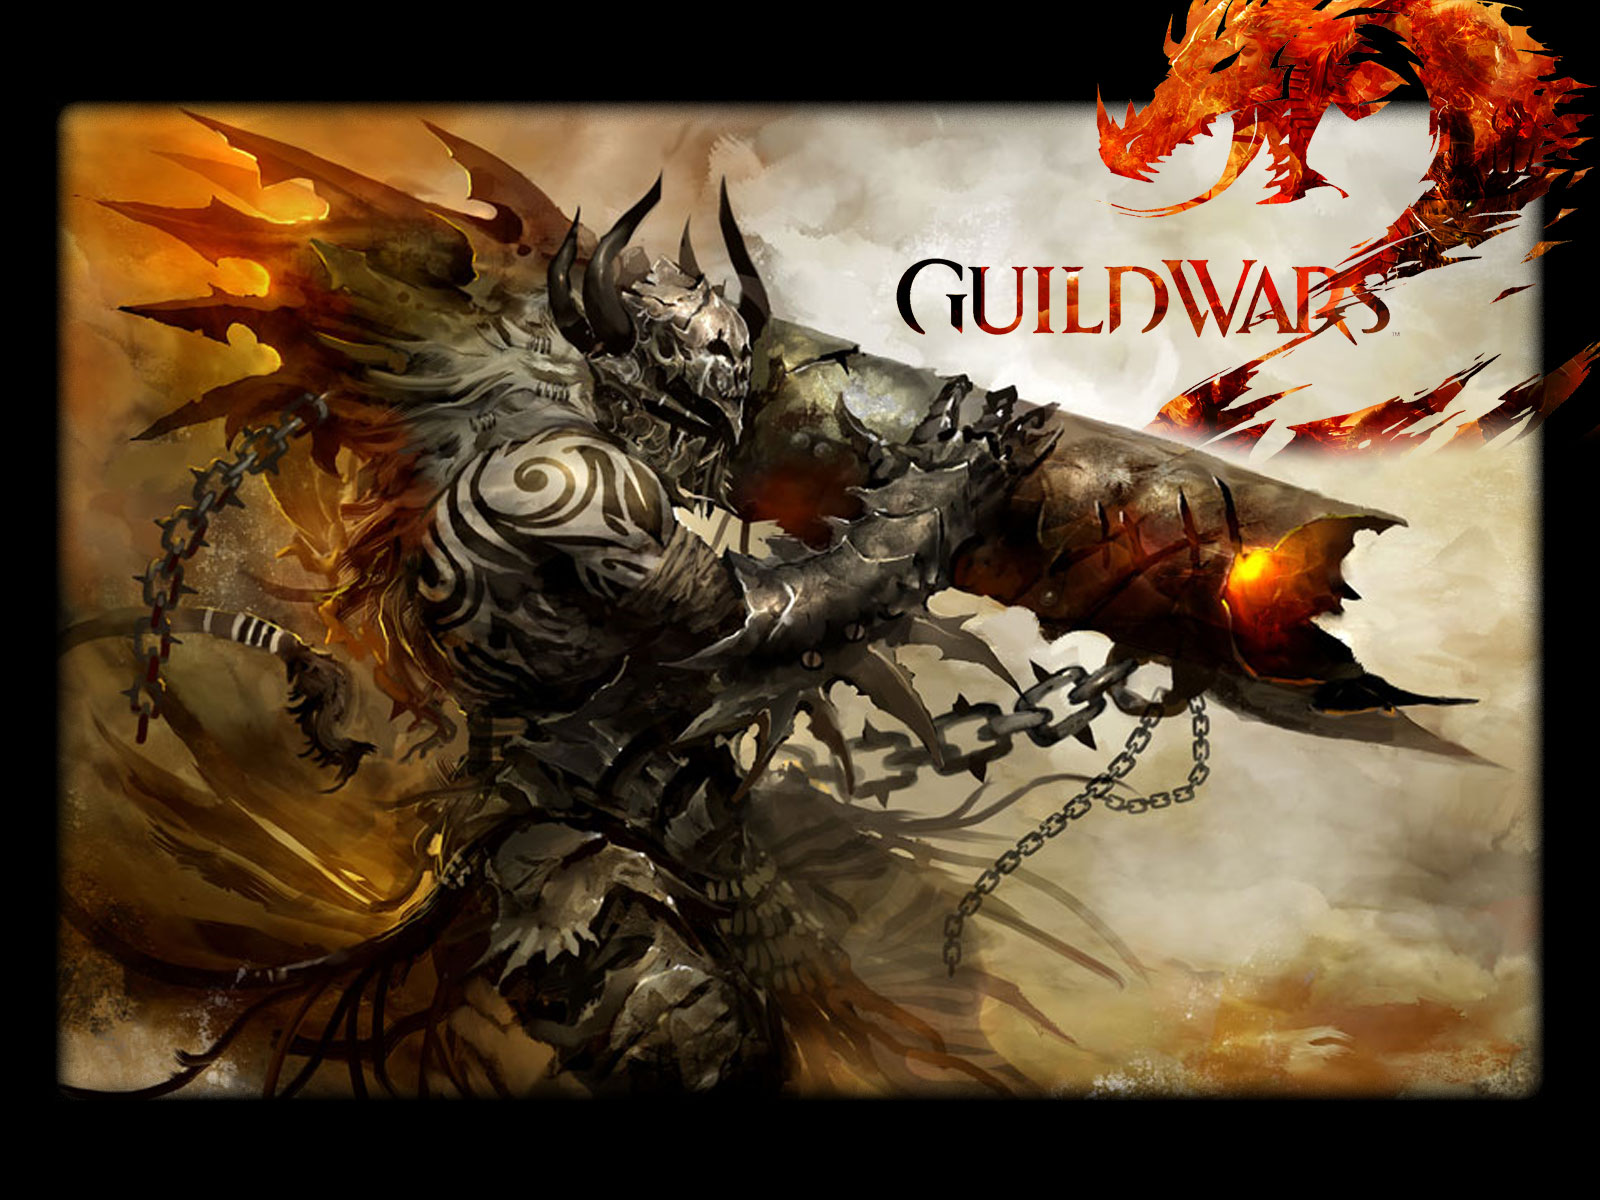 guild wars 2 fond d'écran,oeuvre de cg,personnage fictif,démon,illustration,dragon